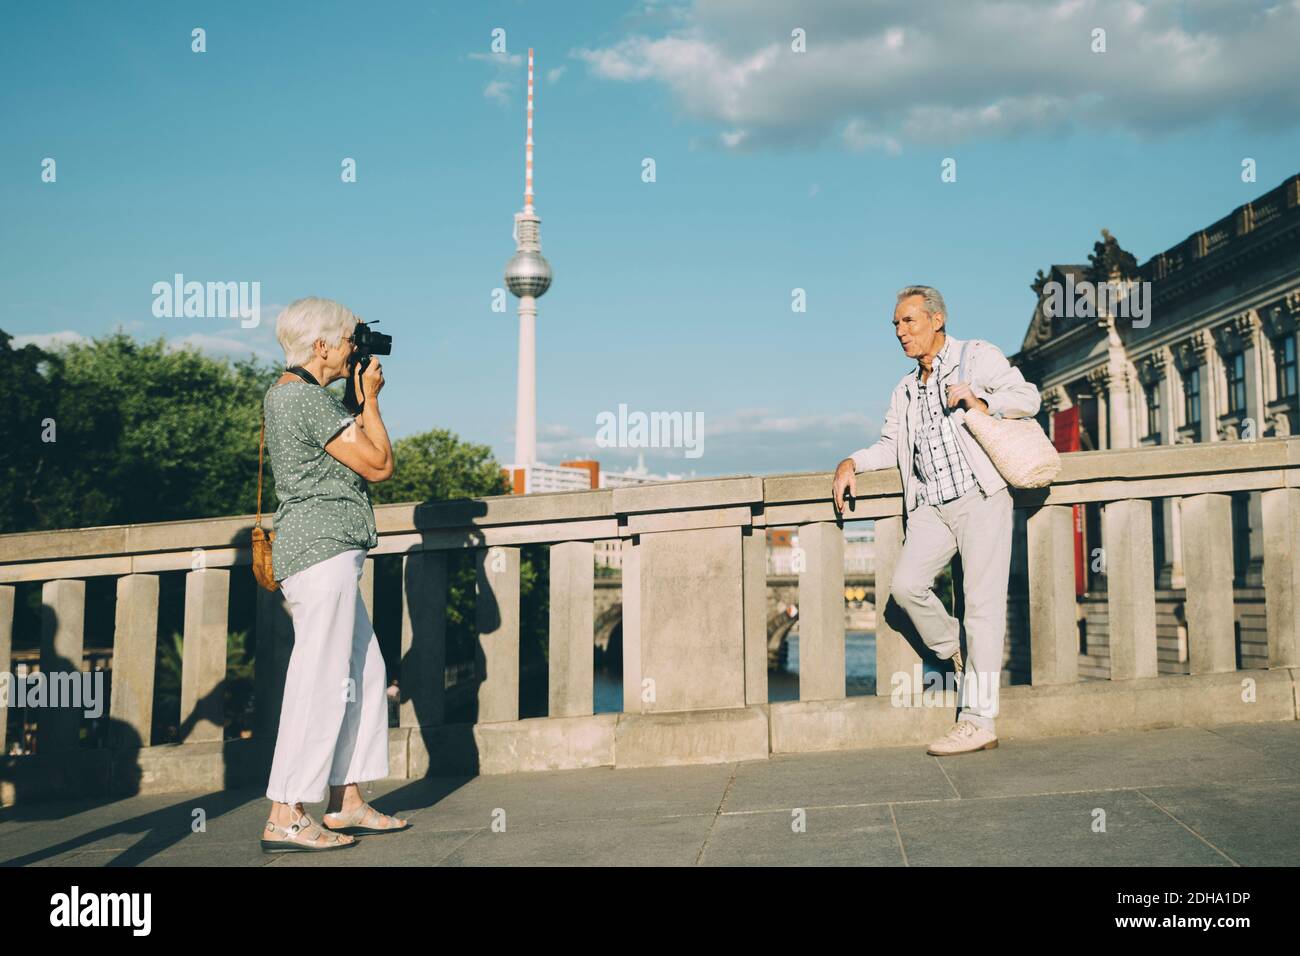 Pleine longueur de femme prenant la photo de l'homme âgé pendant debout sur le pont contre la tour de la ville Banque D'Images